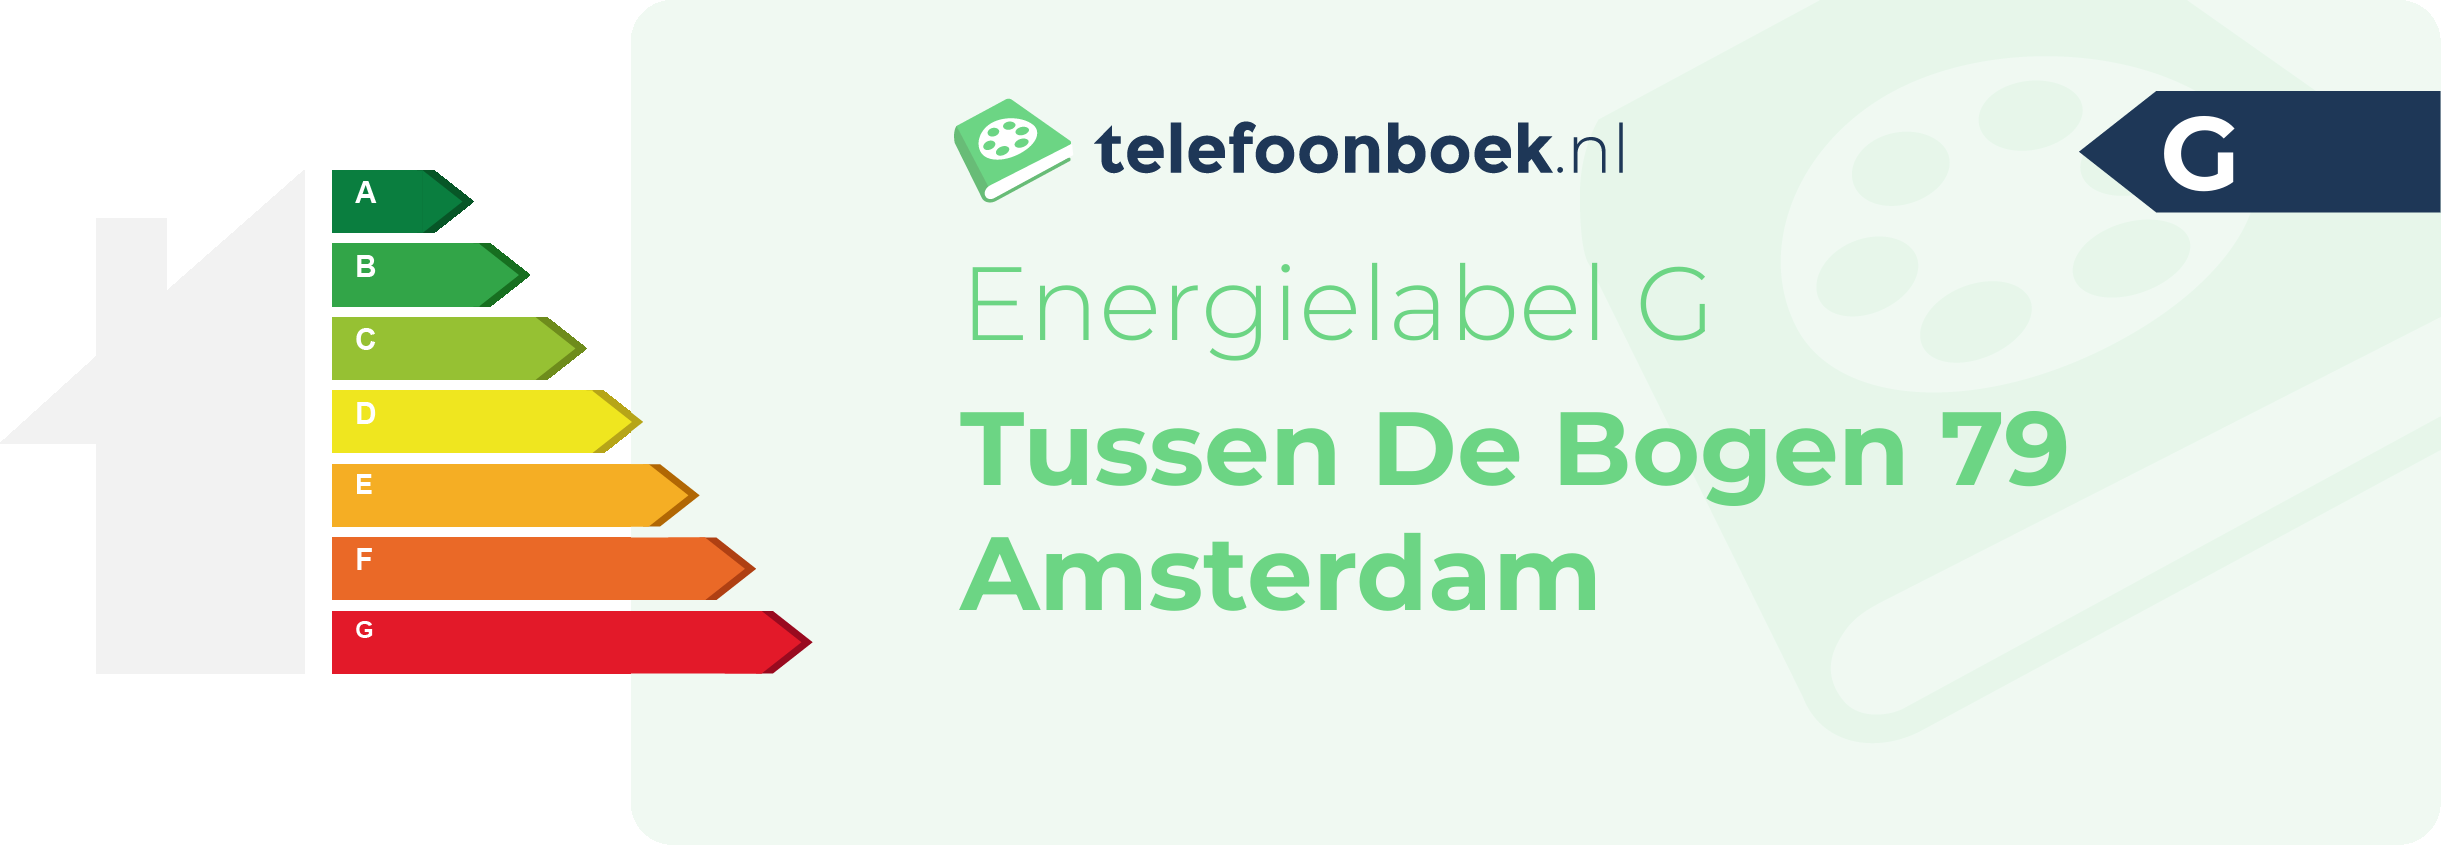 Energielabel Tussen De Bogen 79 Amsterdam